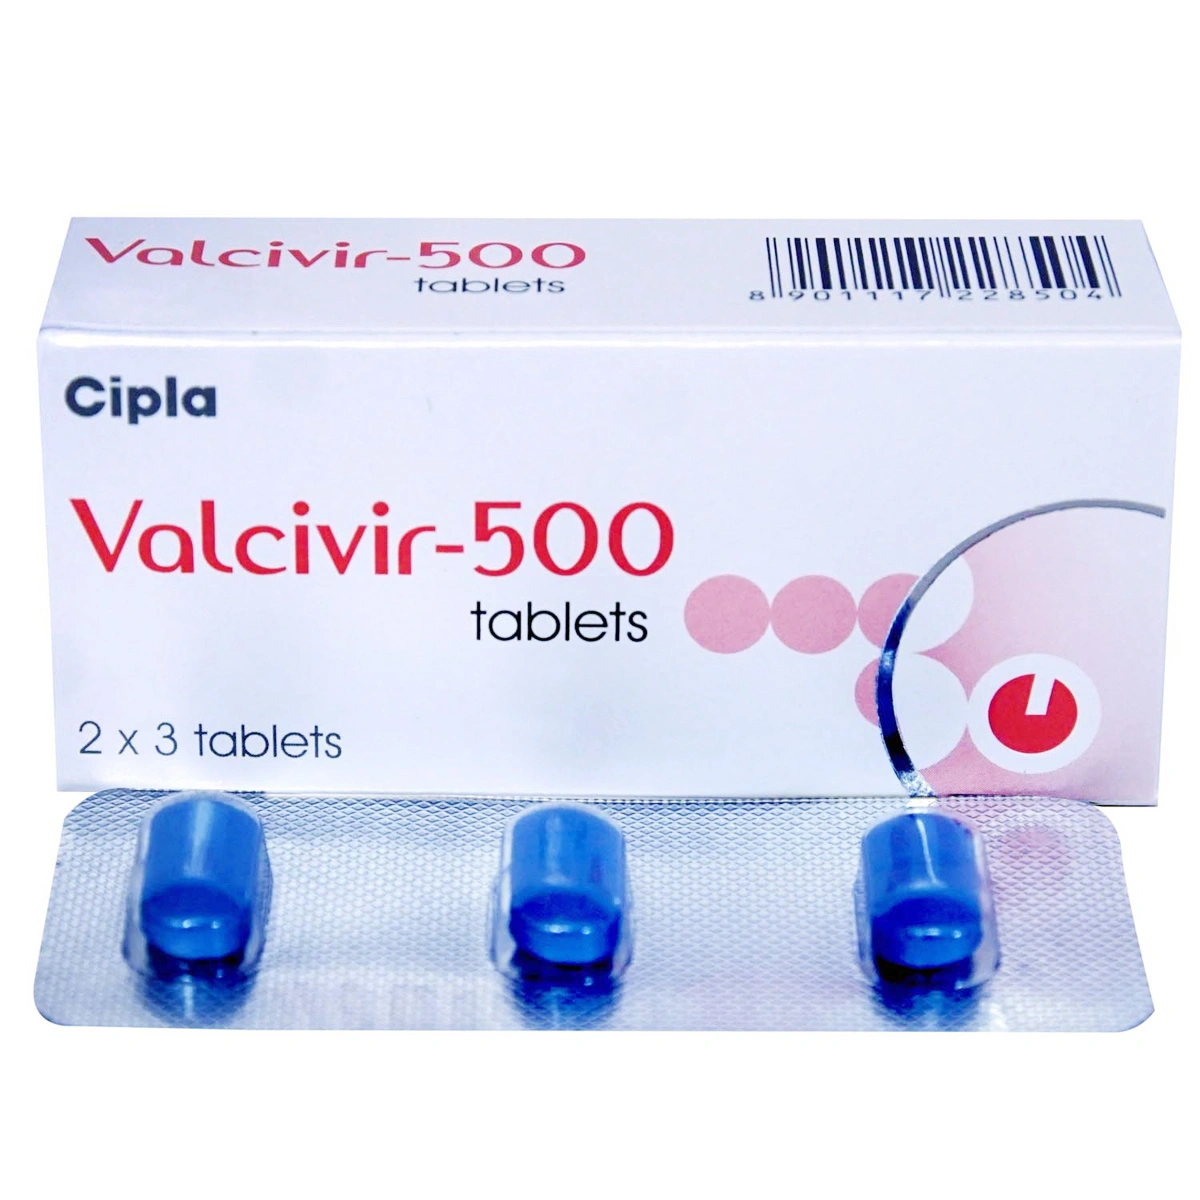 Valcivir 500 Tablet